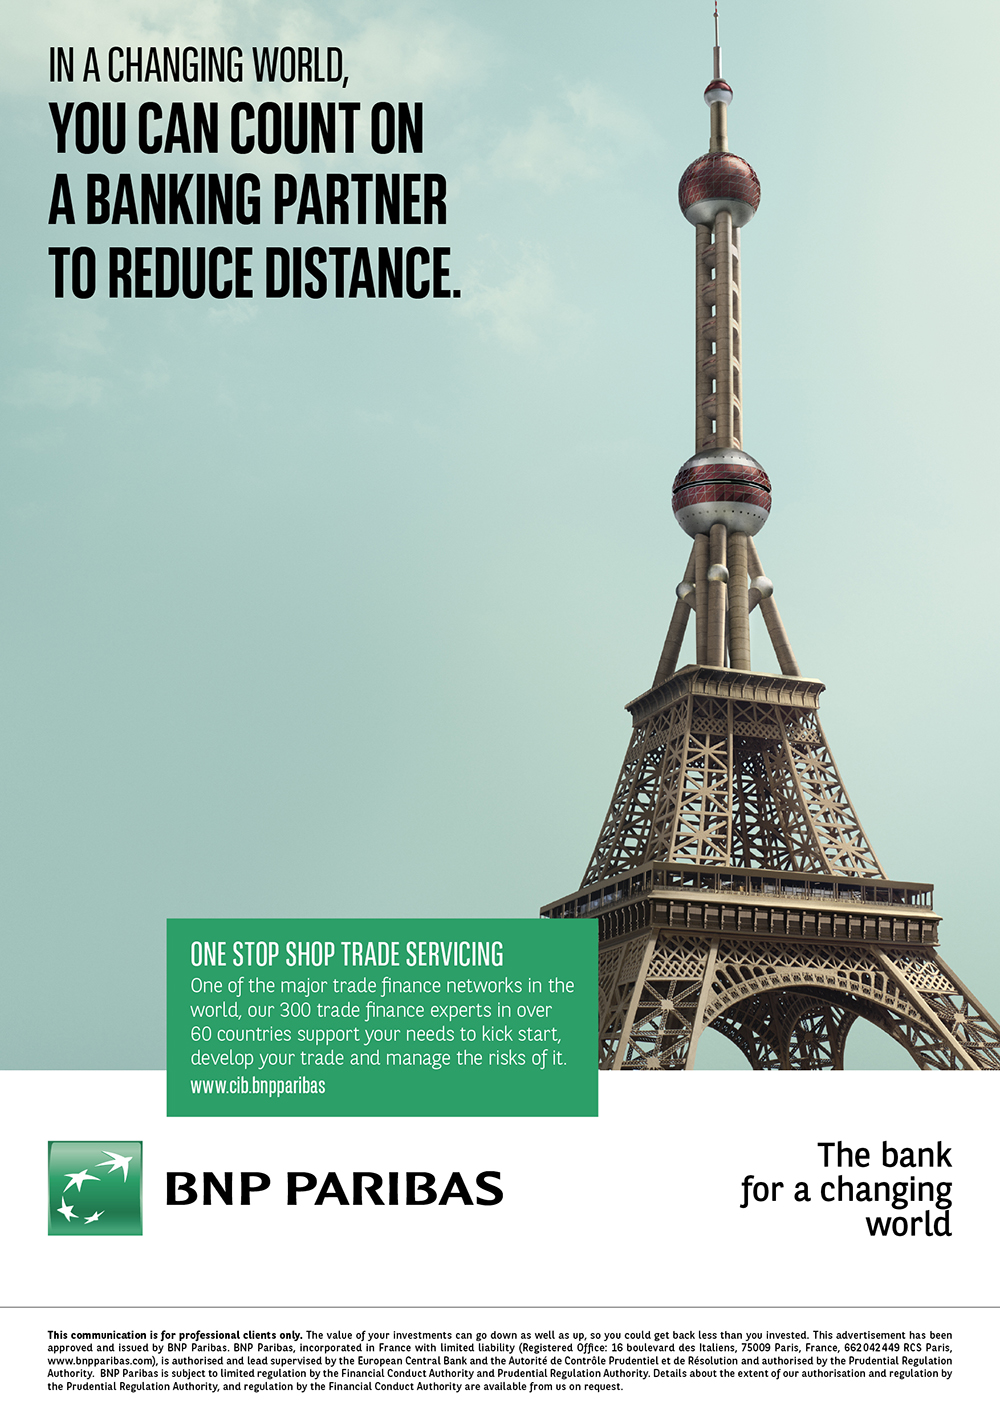 bnp-paribas-publicite-marketing-banque-in-a-changing-world-la-banque-un-monde-qui-change-2015-publicis-conseil-4